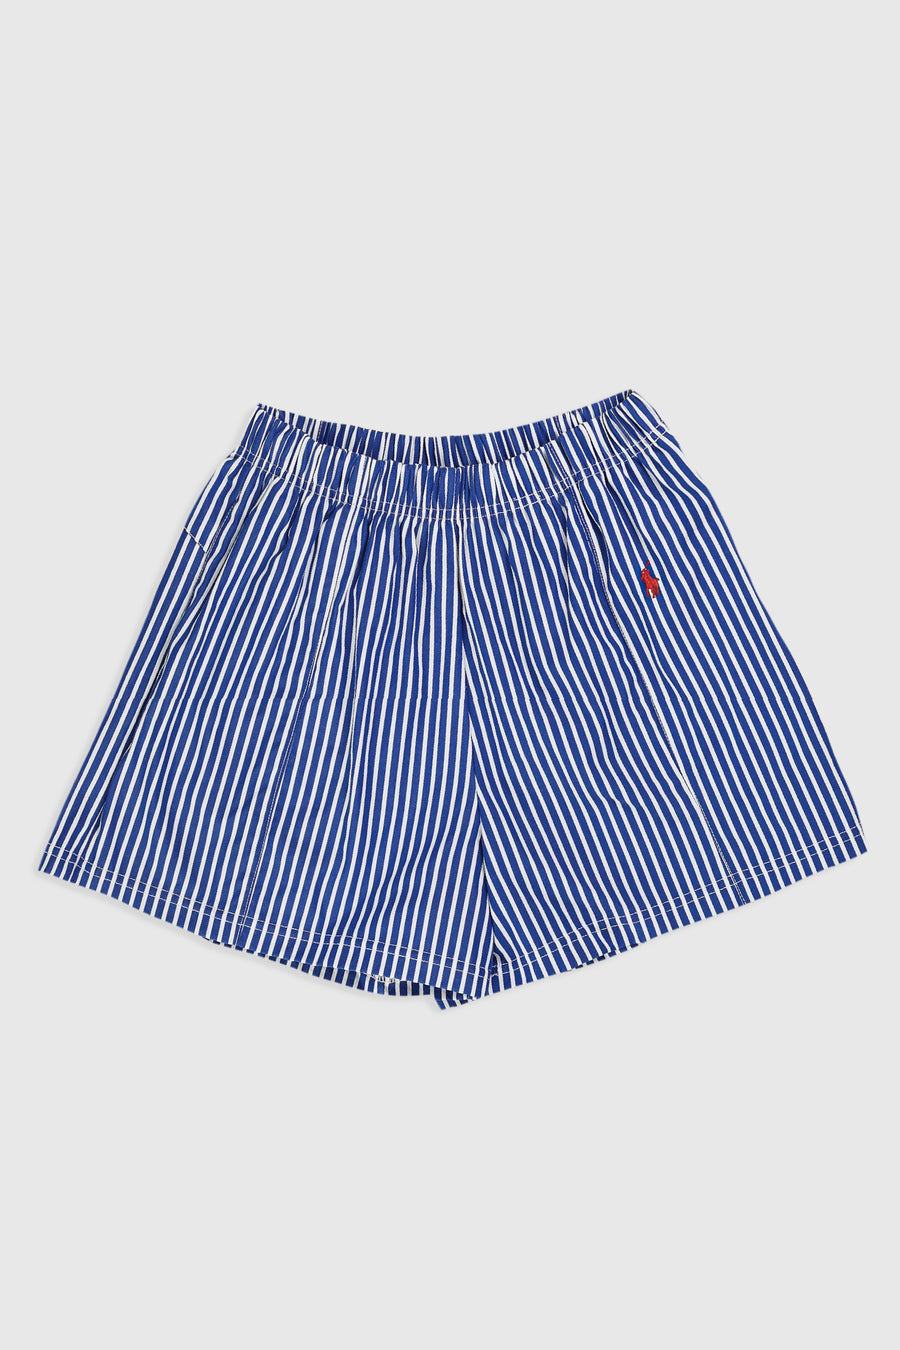 Rework Polo Oxford Mini Boxer Shorts - S